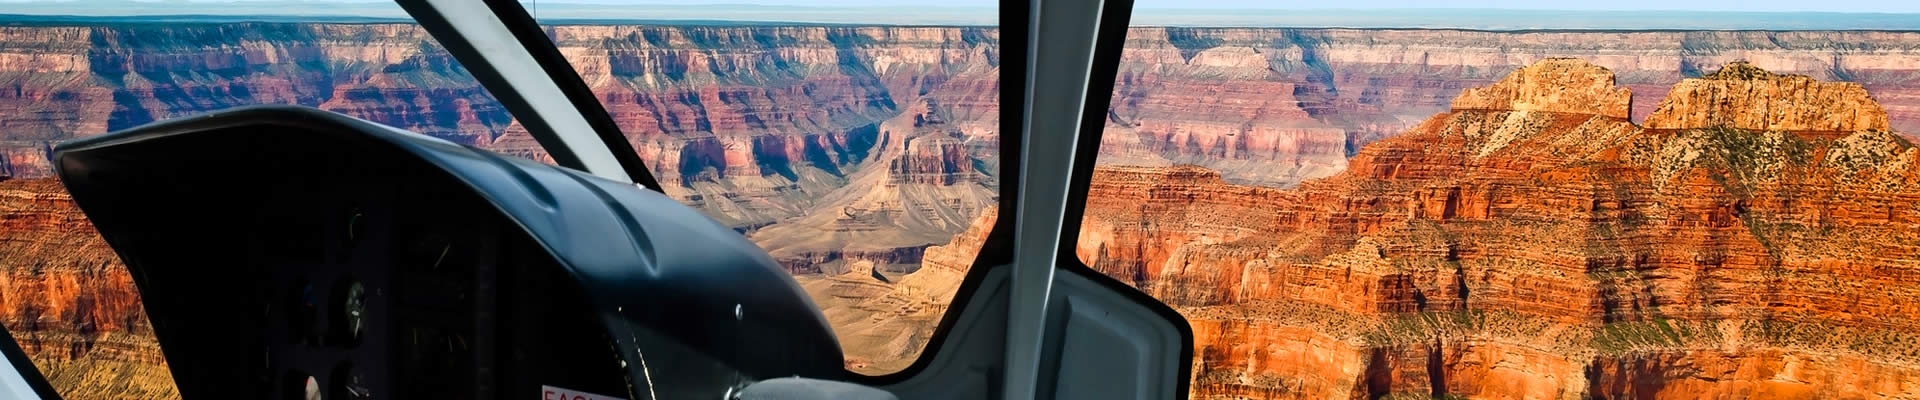 Hubschrauberrundflüge im Grand Canyon